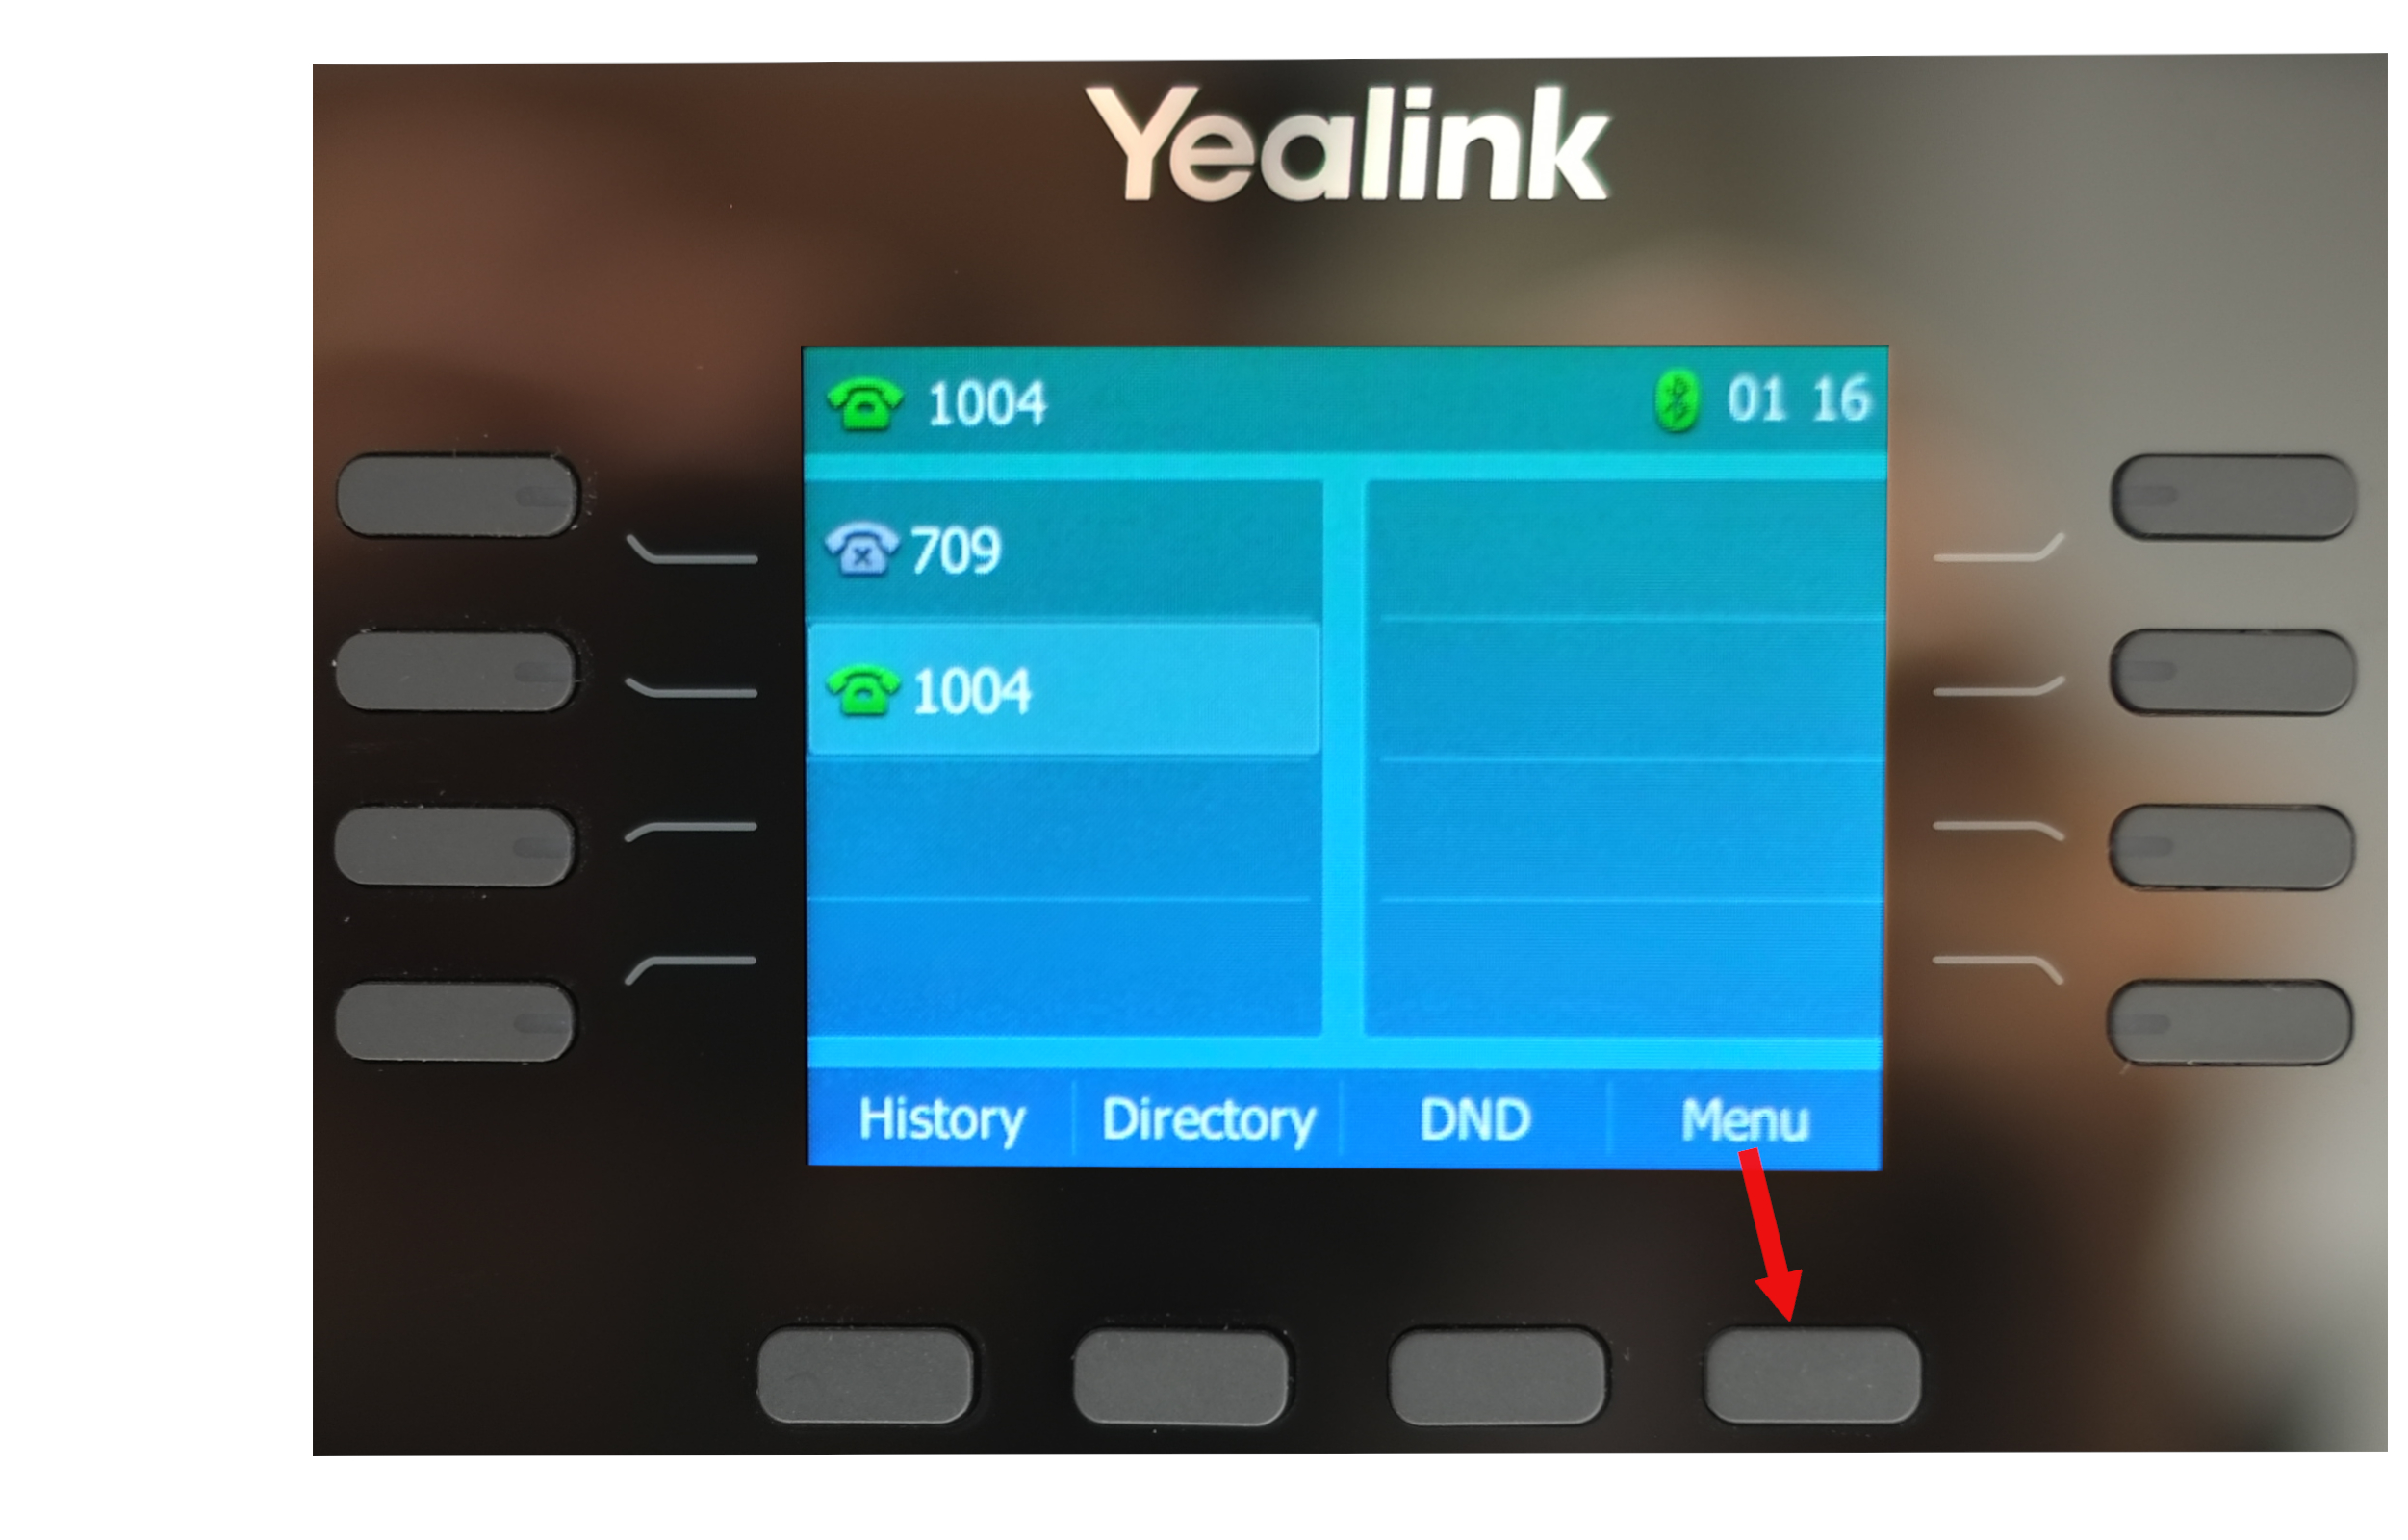 Yealink phone menu keys